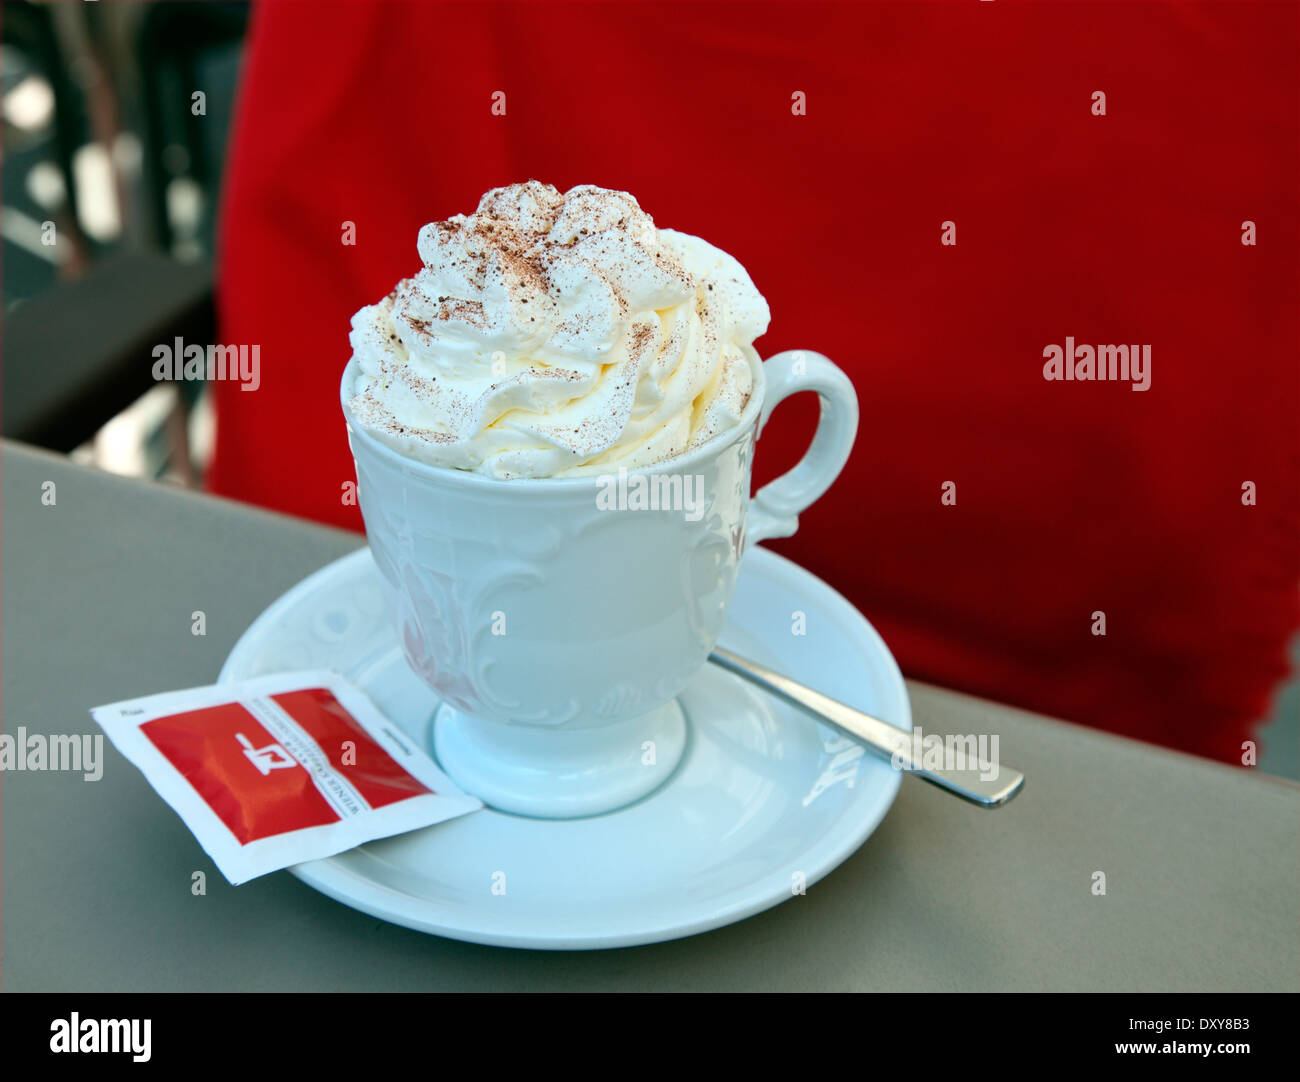 Chocolate caliente con crema batida, servido en te Hofberg café en Viena Foto de stock